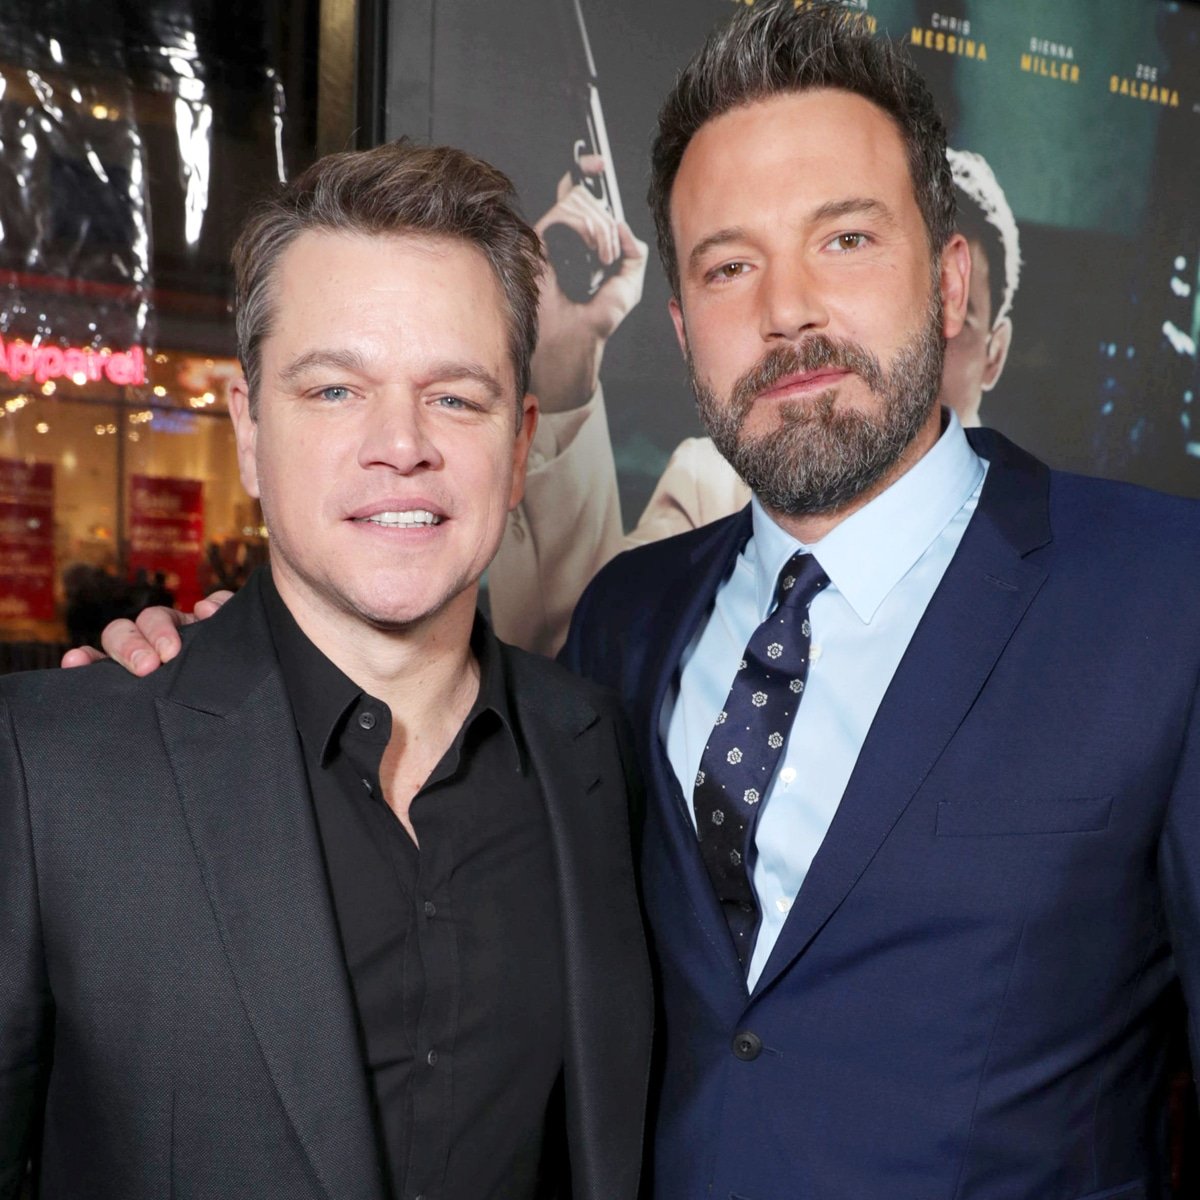 En 2017 cuando Rose McGowan habló sobre los abusos sexuales de Harvey Weinstein, Rose acusó a los actores Ben Affleck y Matt Damon de encubrir a Weinstein y ocultar que este la violó